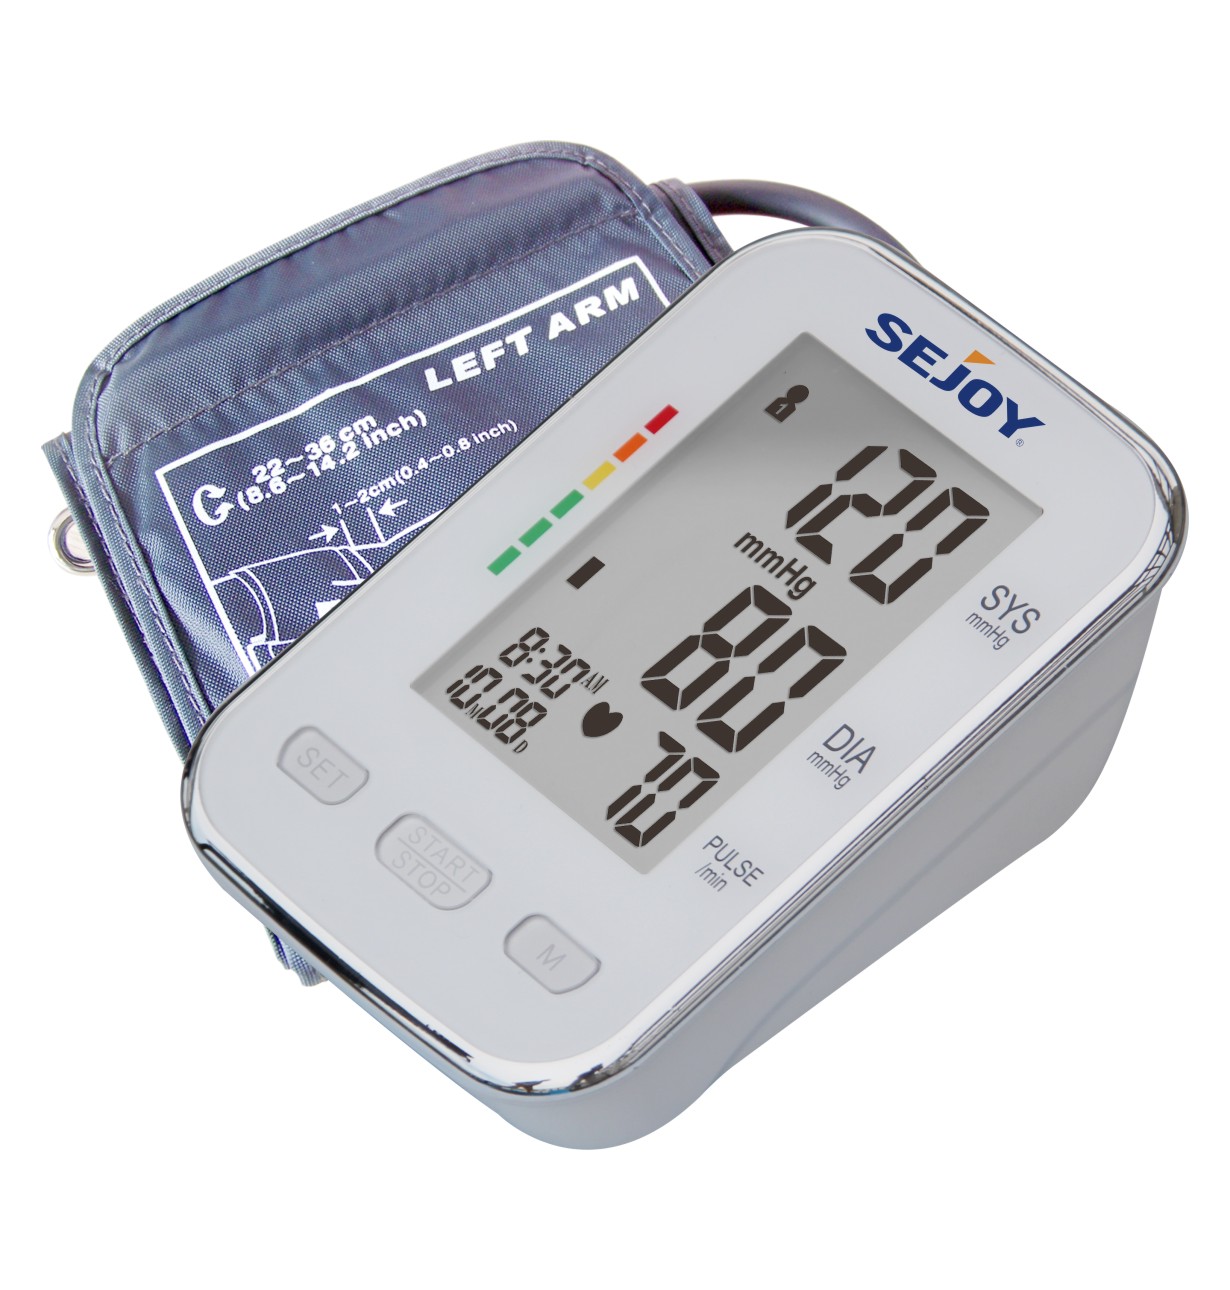 臂式电子血压计|BSP13